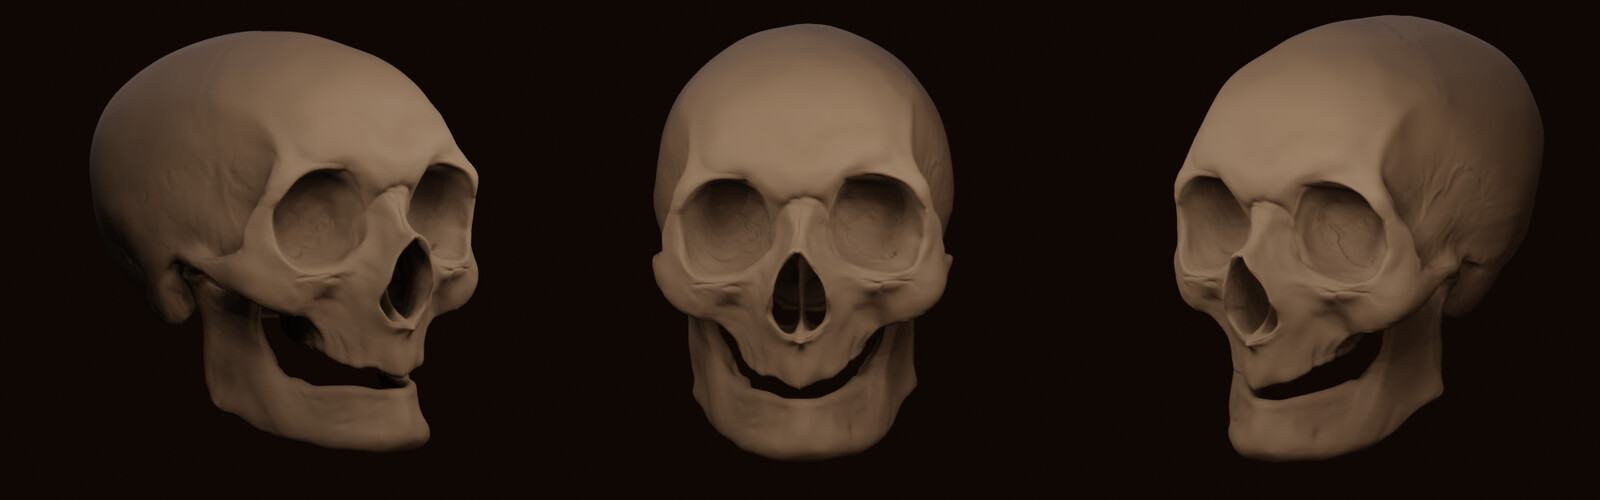 3d skull 